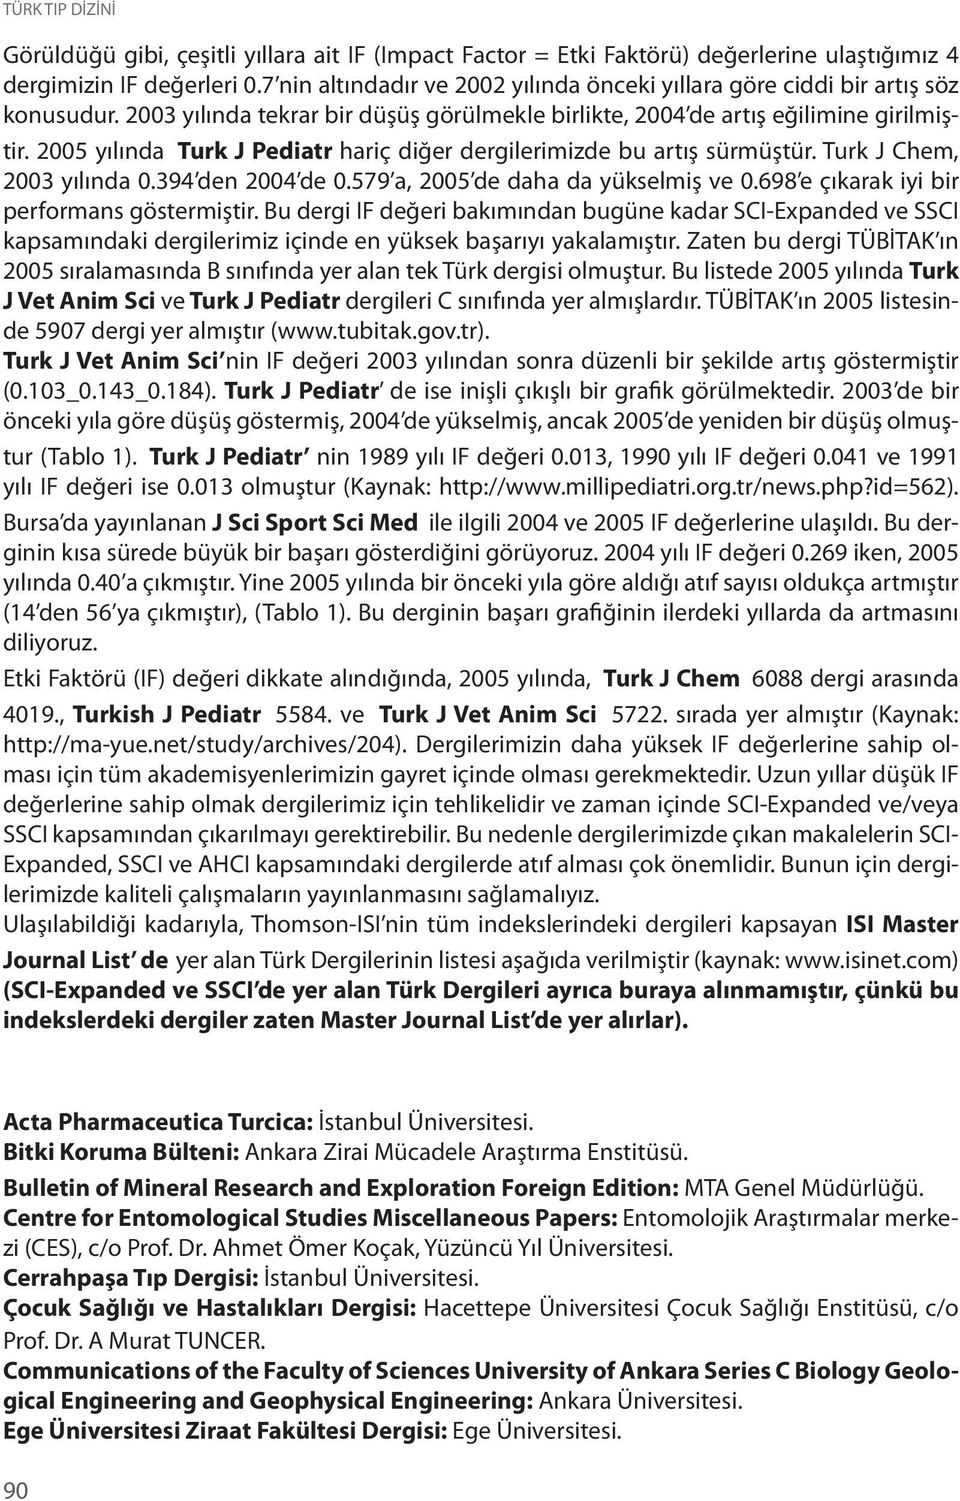 2005 yılında Turk J Pediatr hariç diğer dergilerimizde bu artış sürmüştür. Turk J Chem, 2003 yılında 0.394 den 2004 de 0.579 a, 2005 de daha da yükselmiş ve 0.